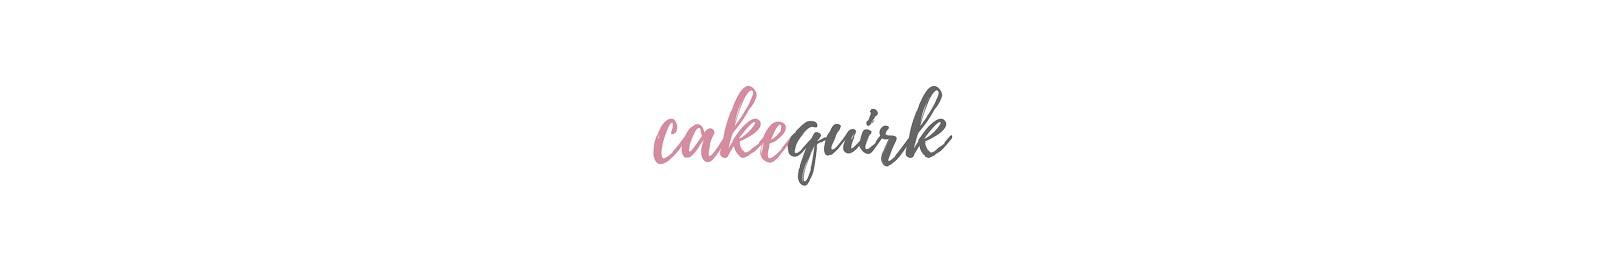 cake quirk